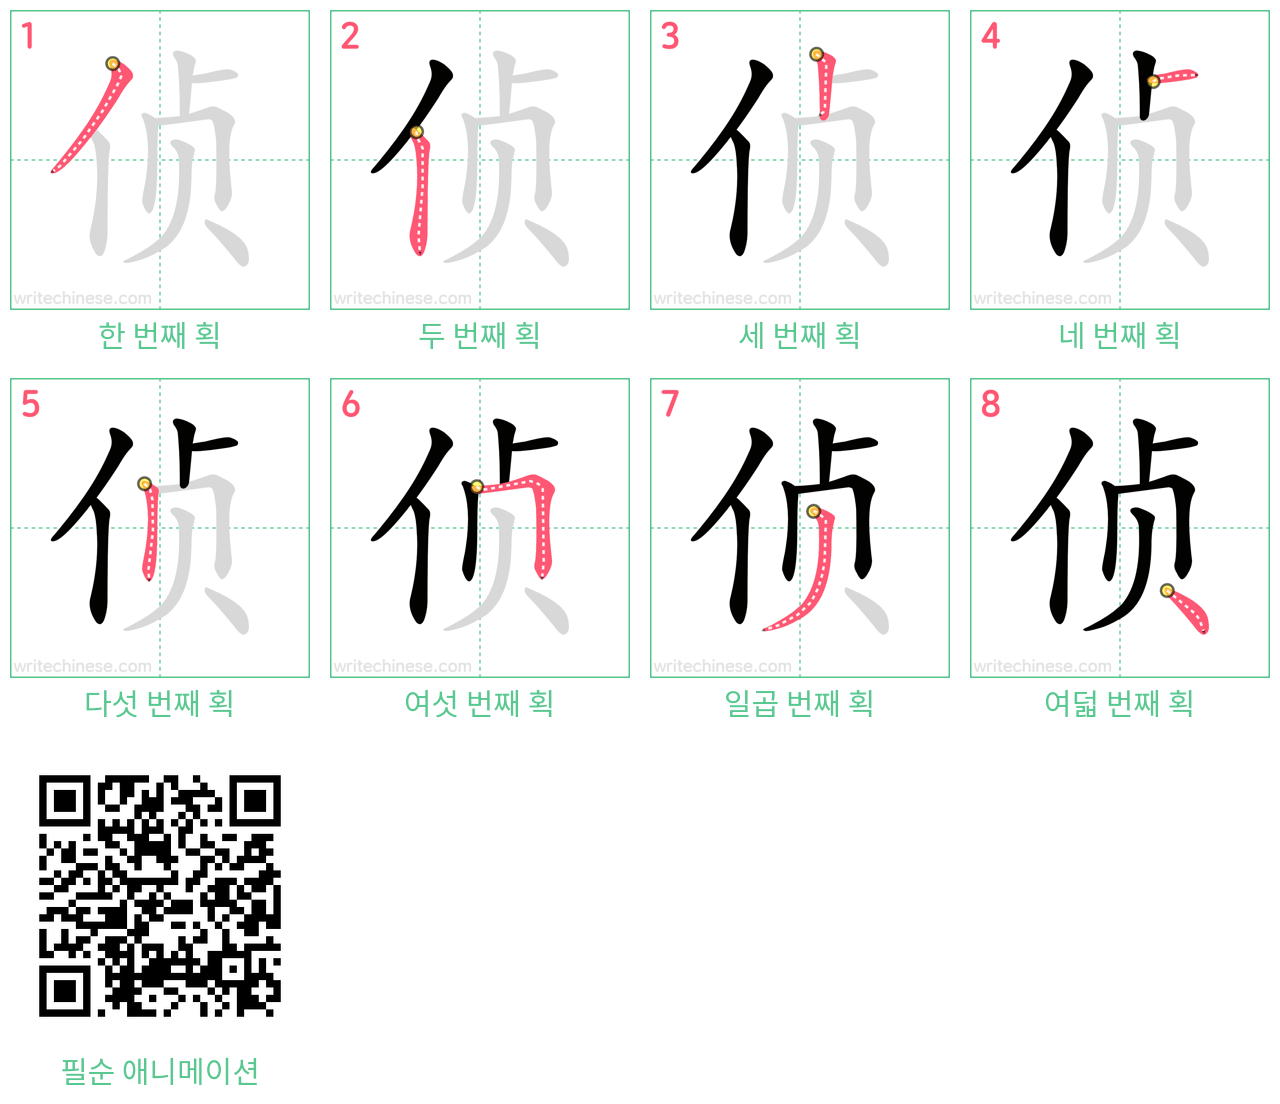 侦 step-by-step stroke order diagrams